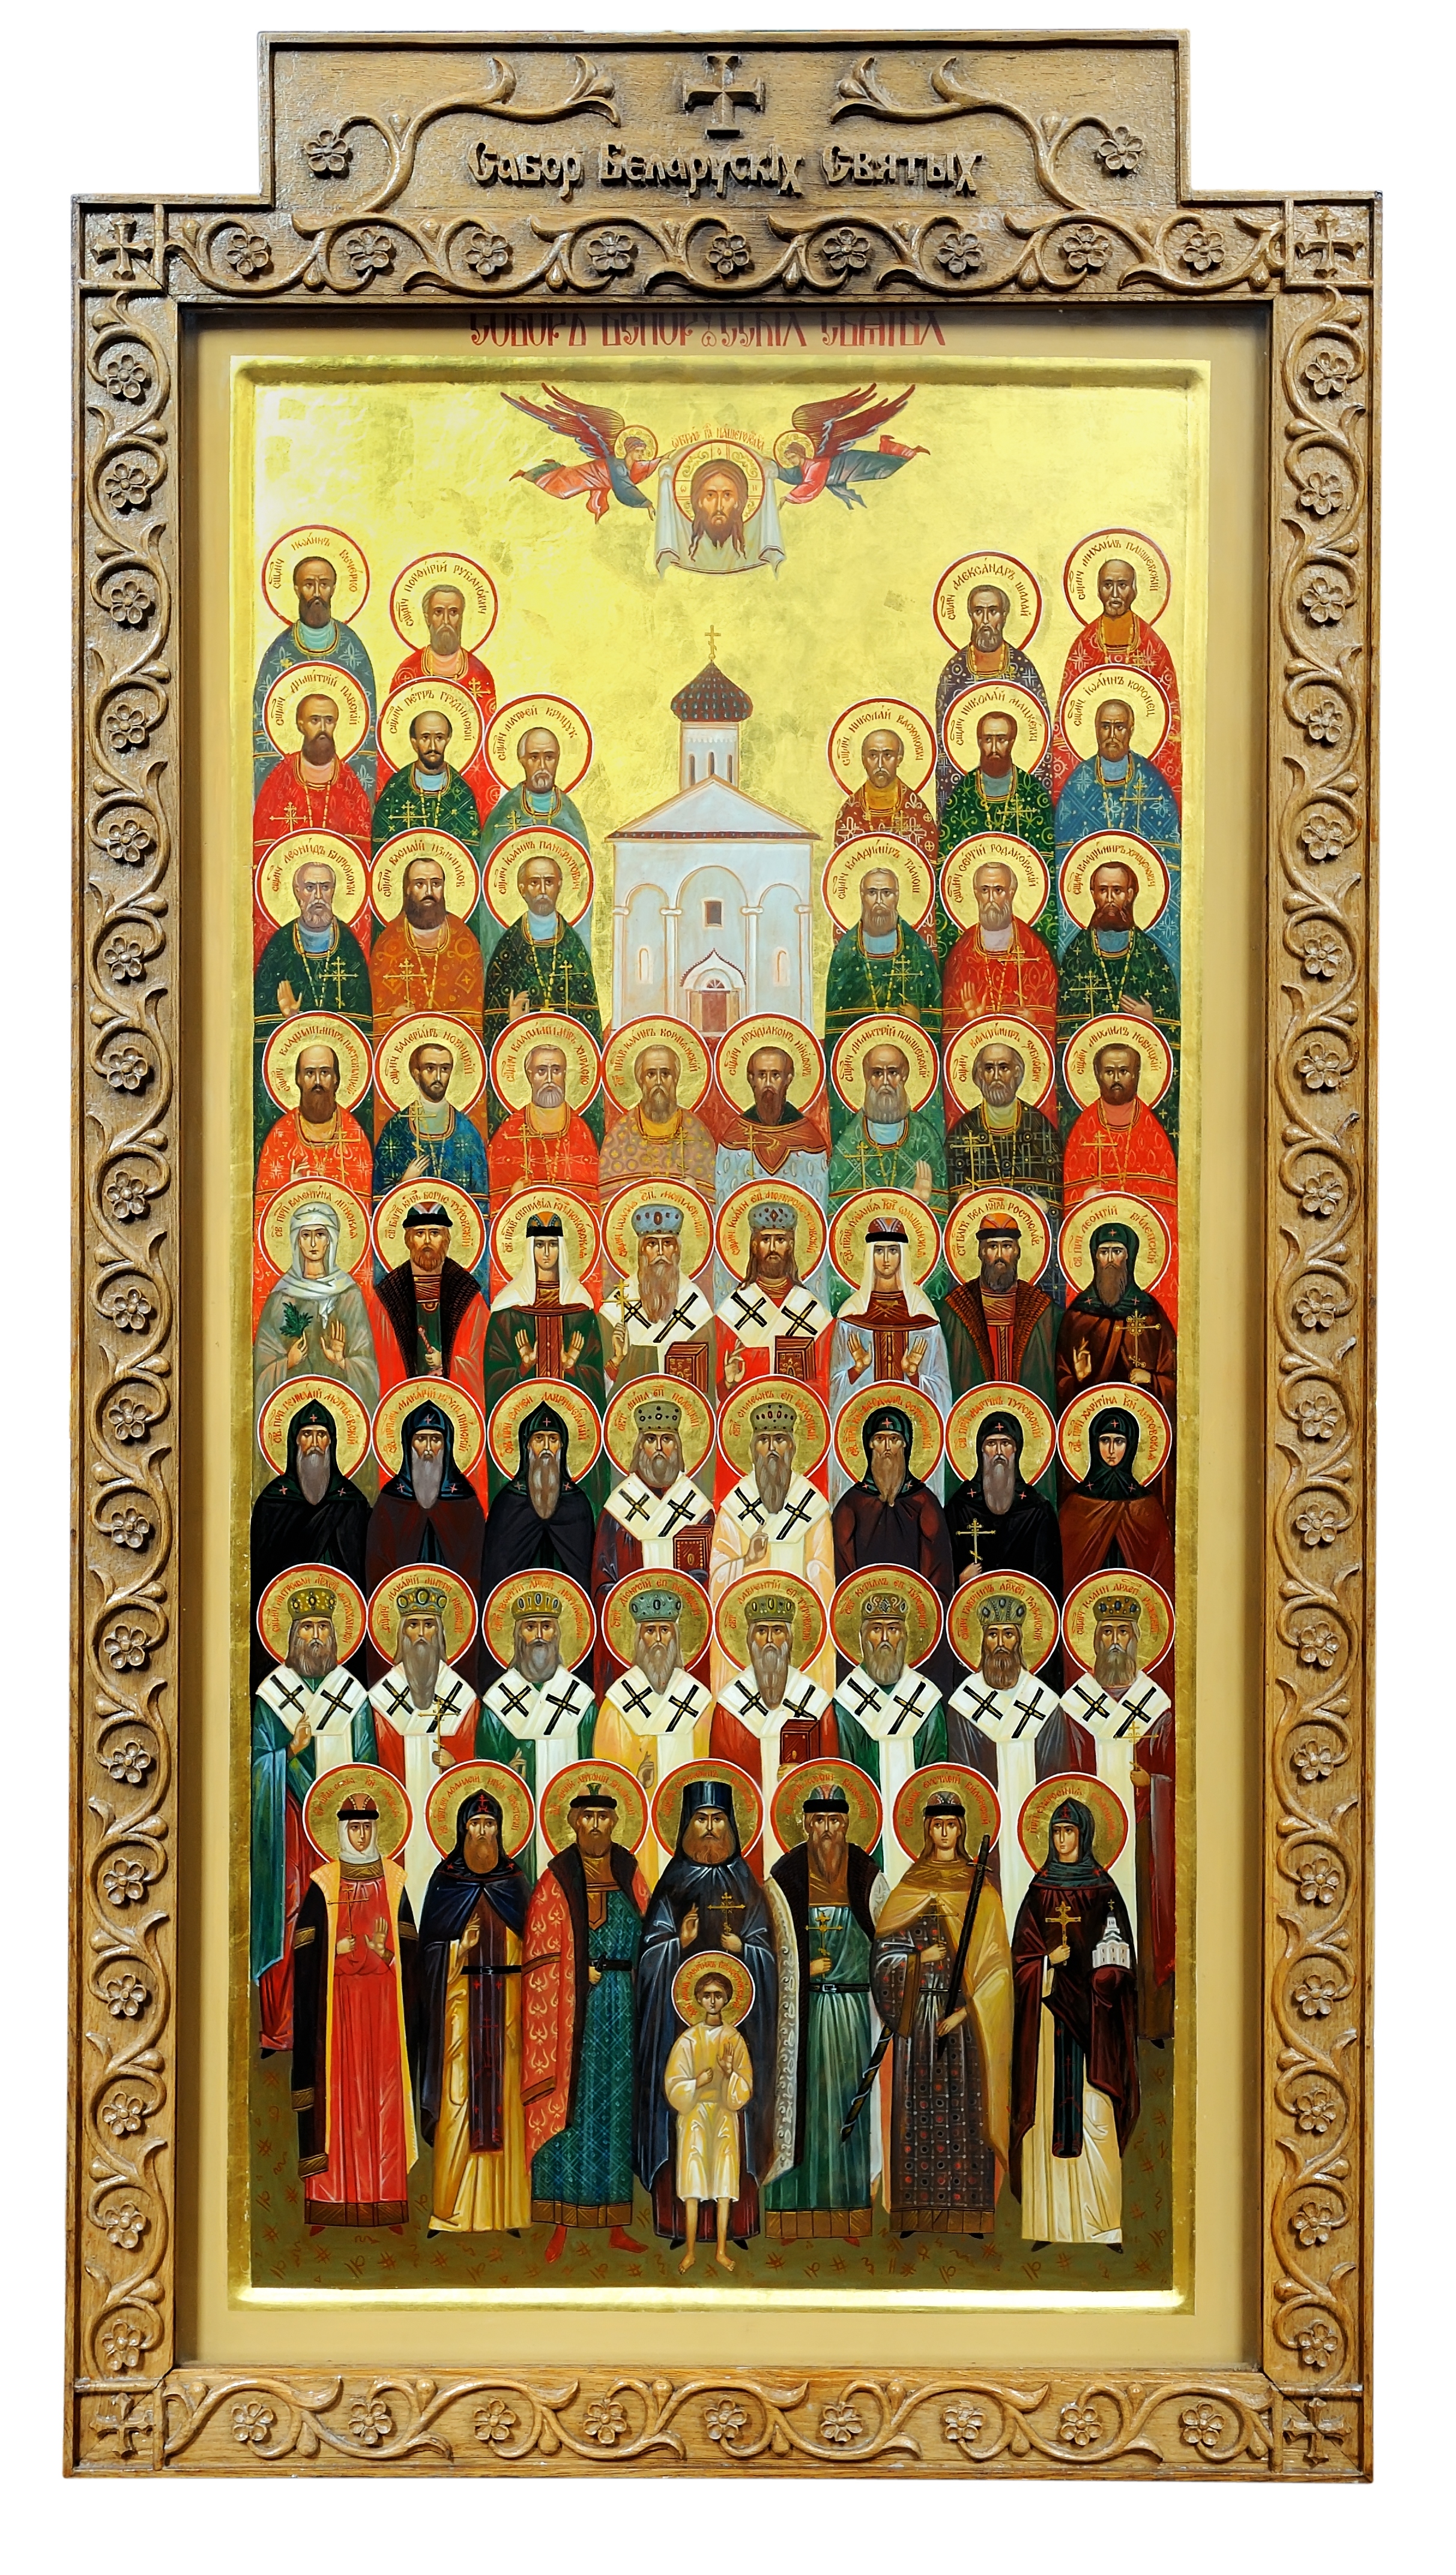 Собор белорусских святых